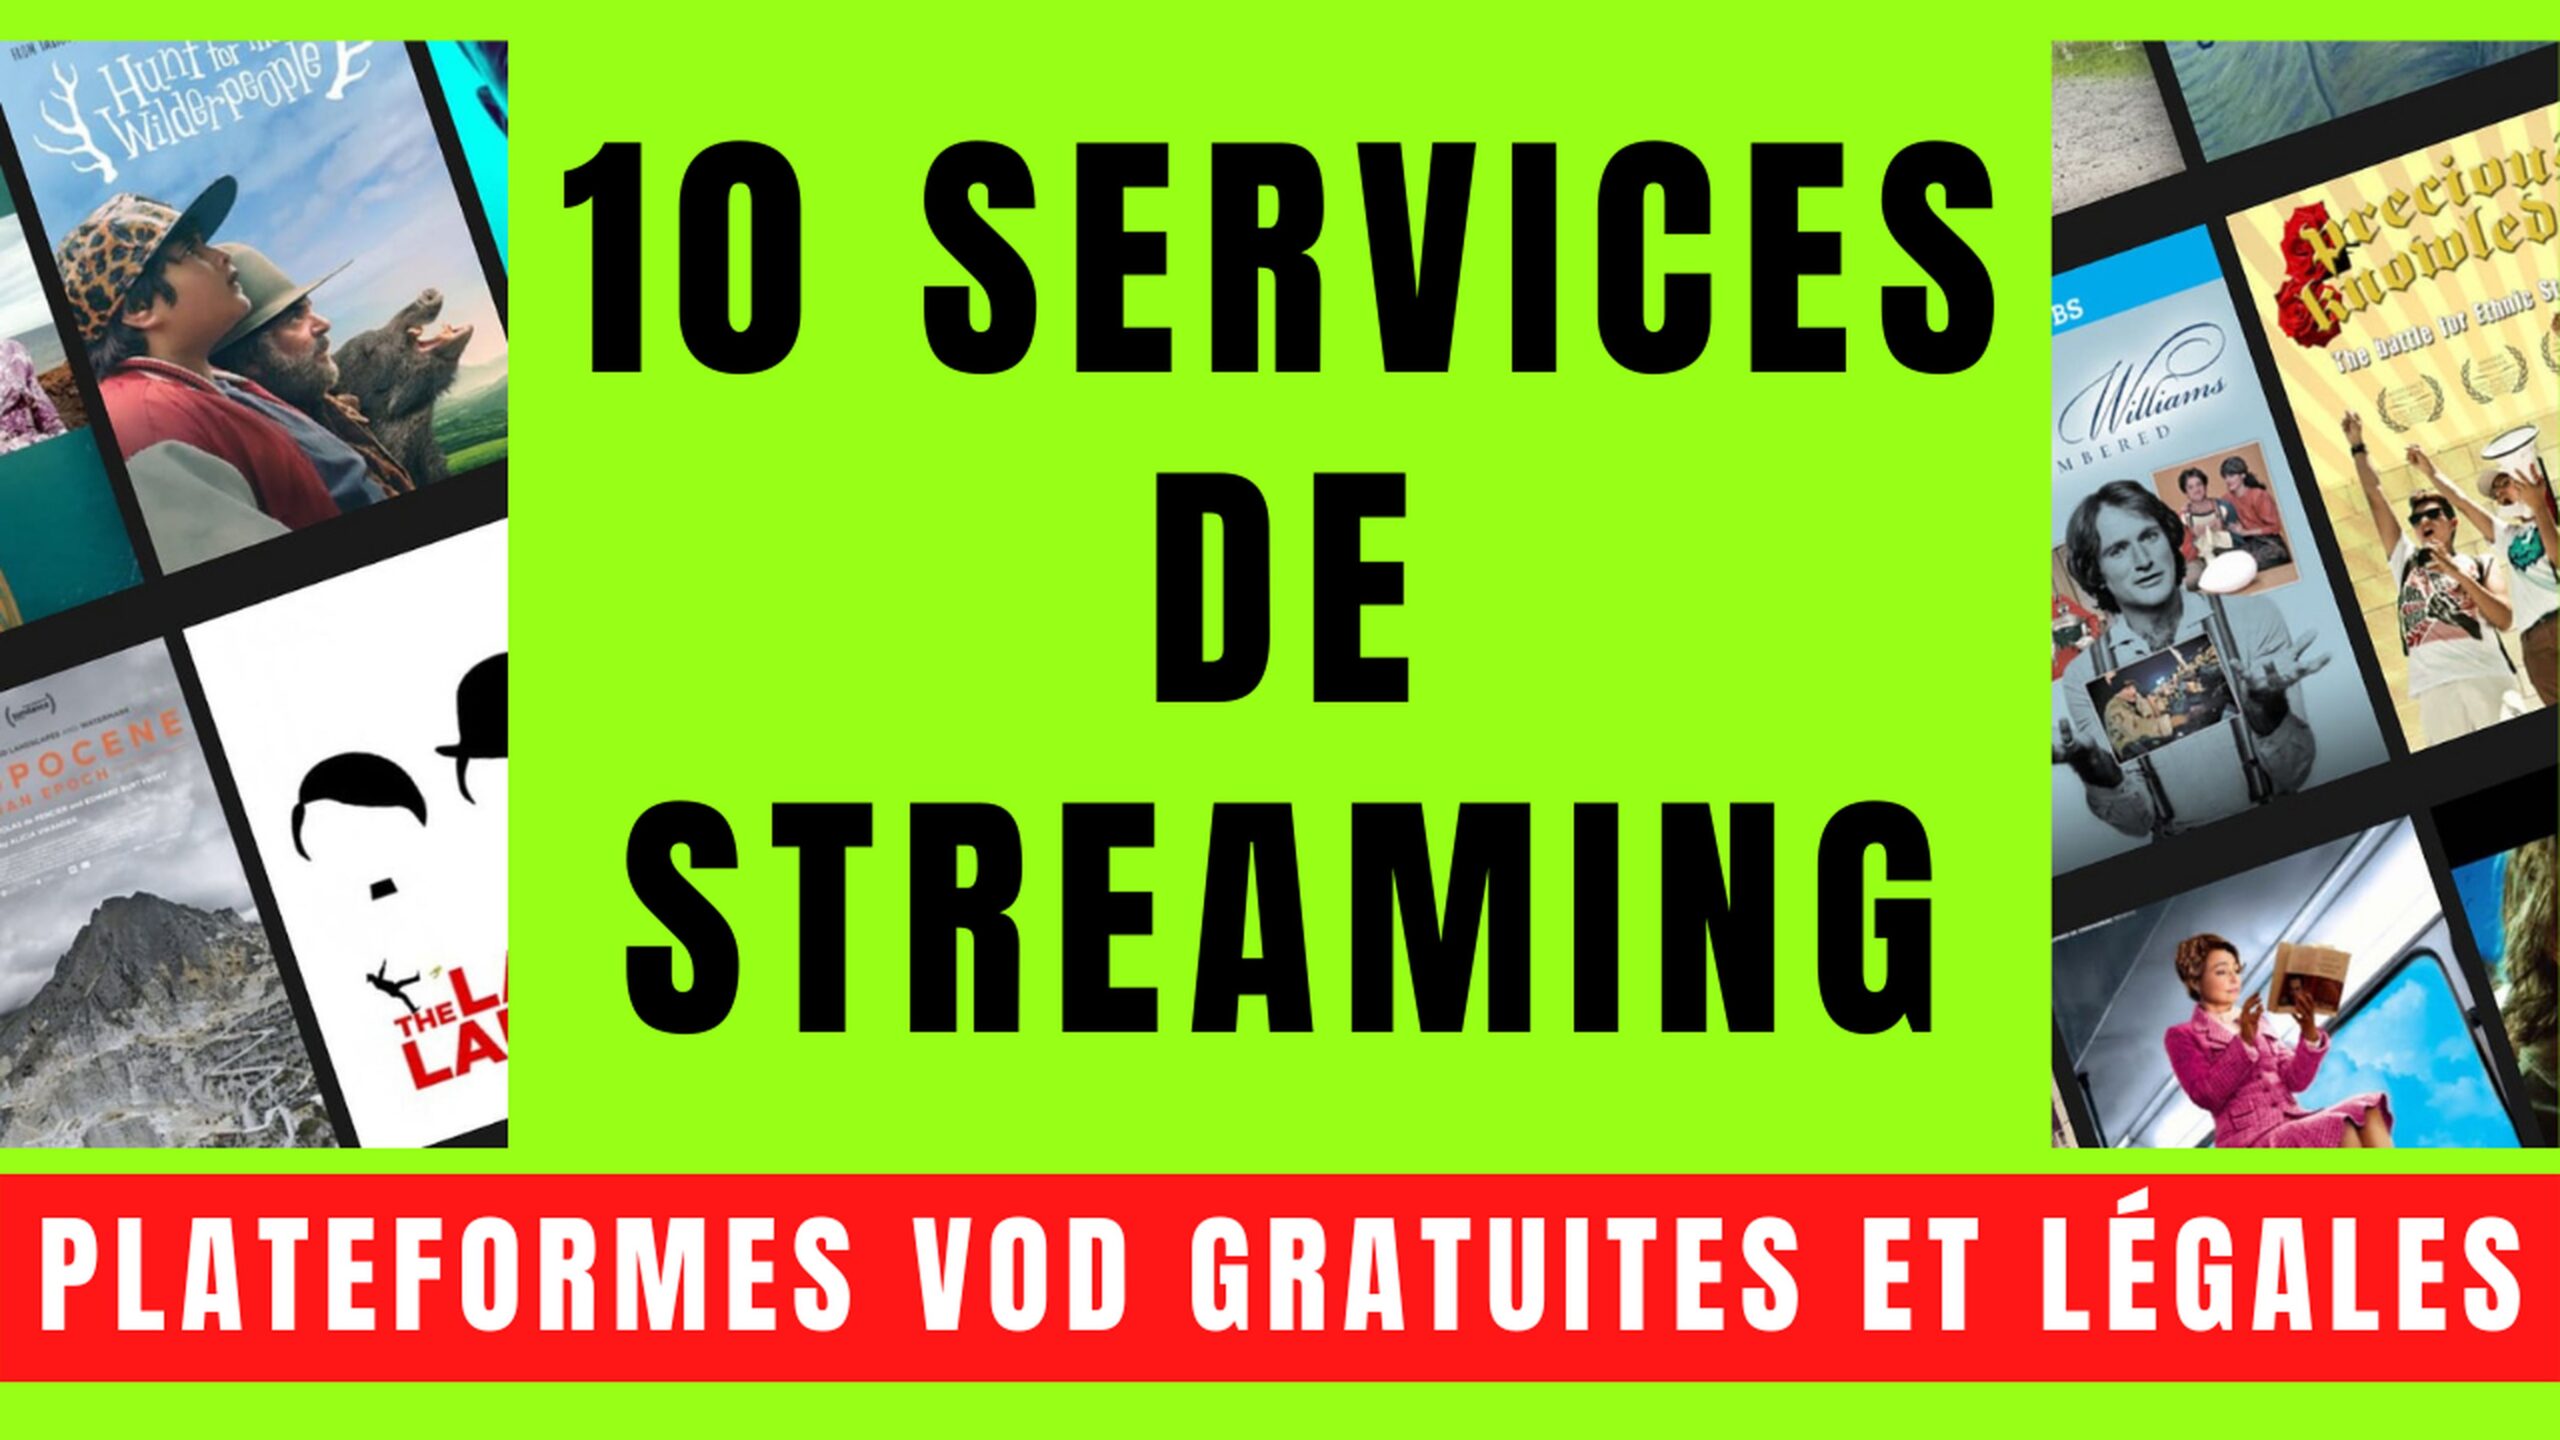 10 SERVICES VOD avec STREAMING GRATUIT et LÉGAL 18